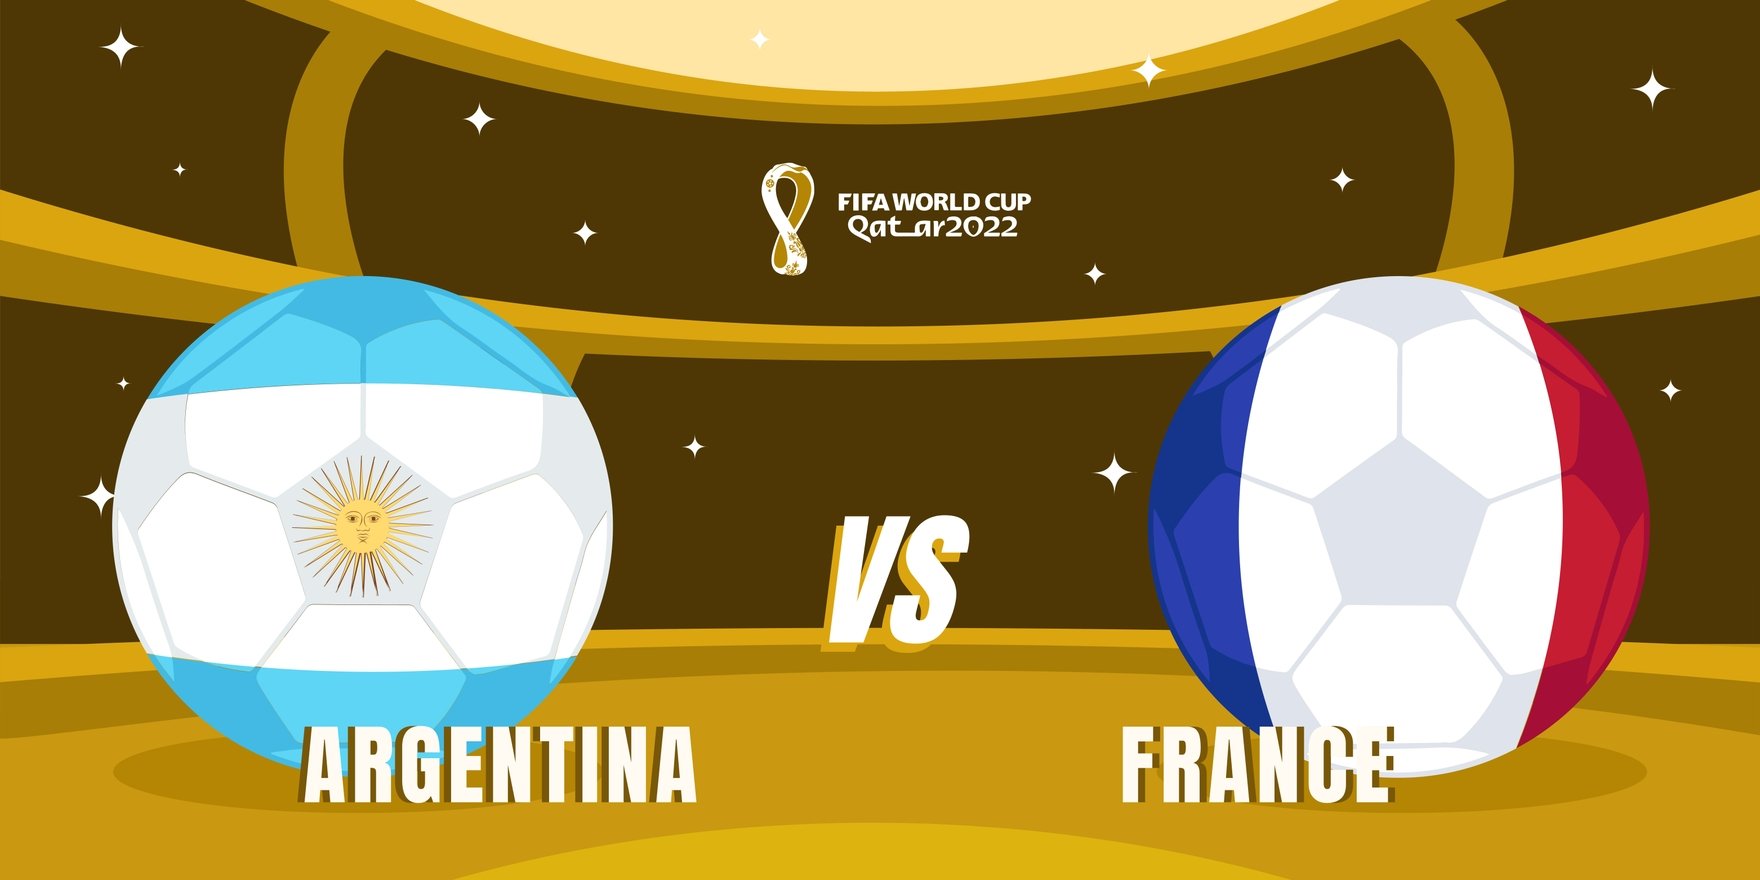 World Cup 2022 Finals Argentina Vs France Banner